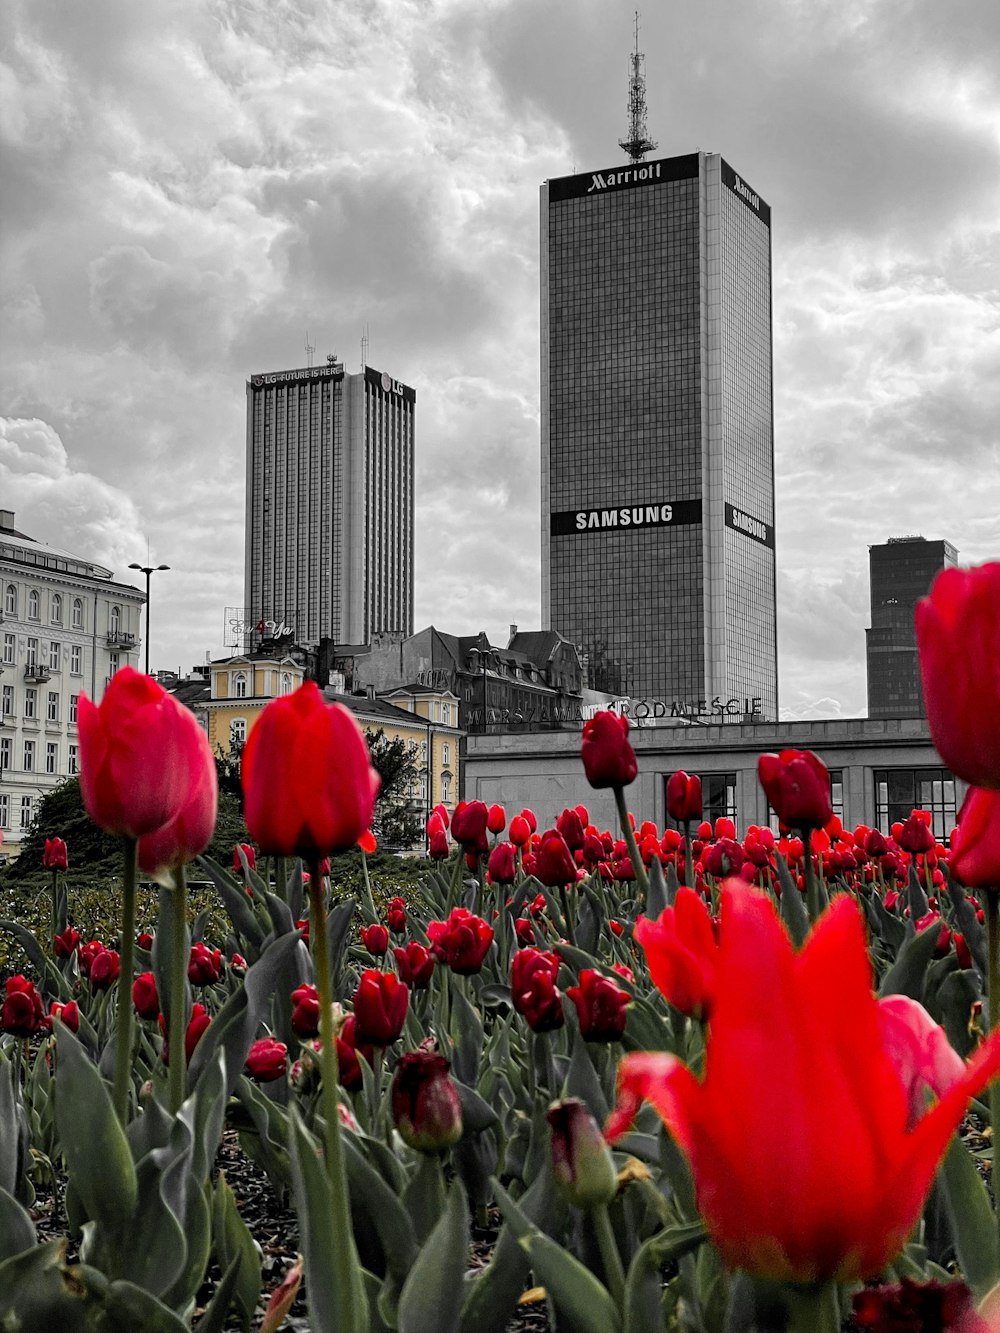 Tulipes rouges près des bâtiments de la ville sous un ciel nuageux pendant la journée